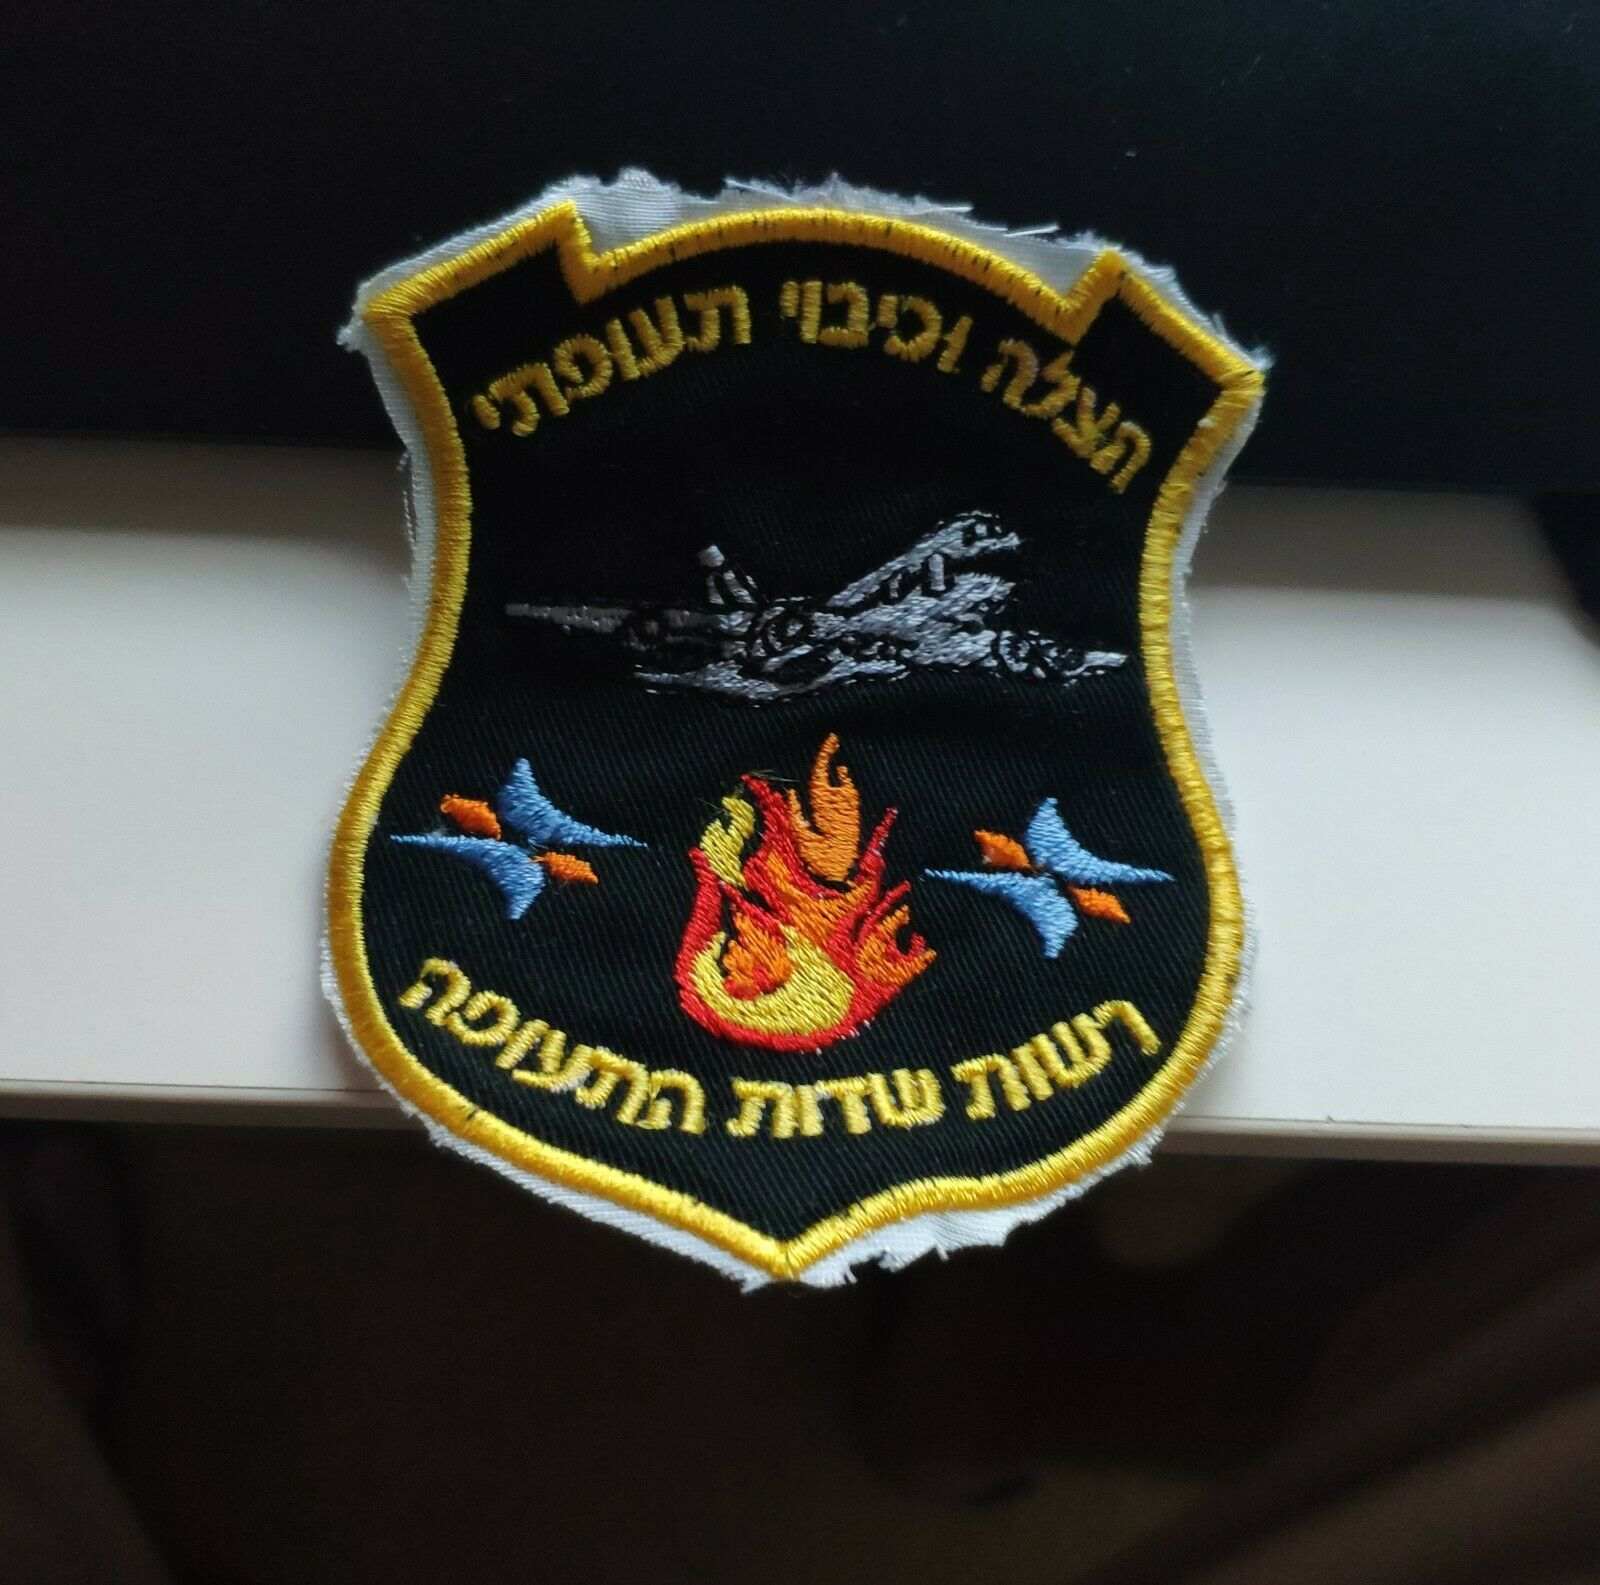 Firefighter-Israel-Airport-unit-pech.jpg